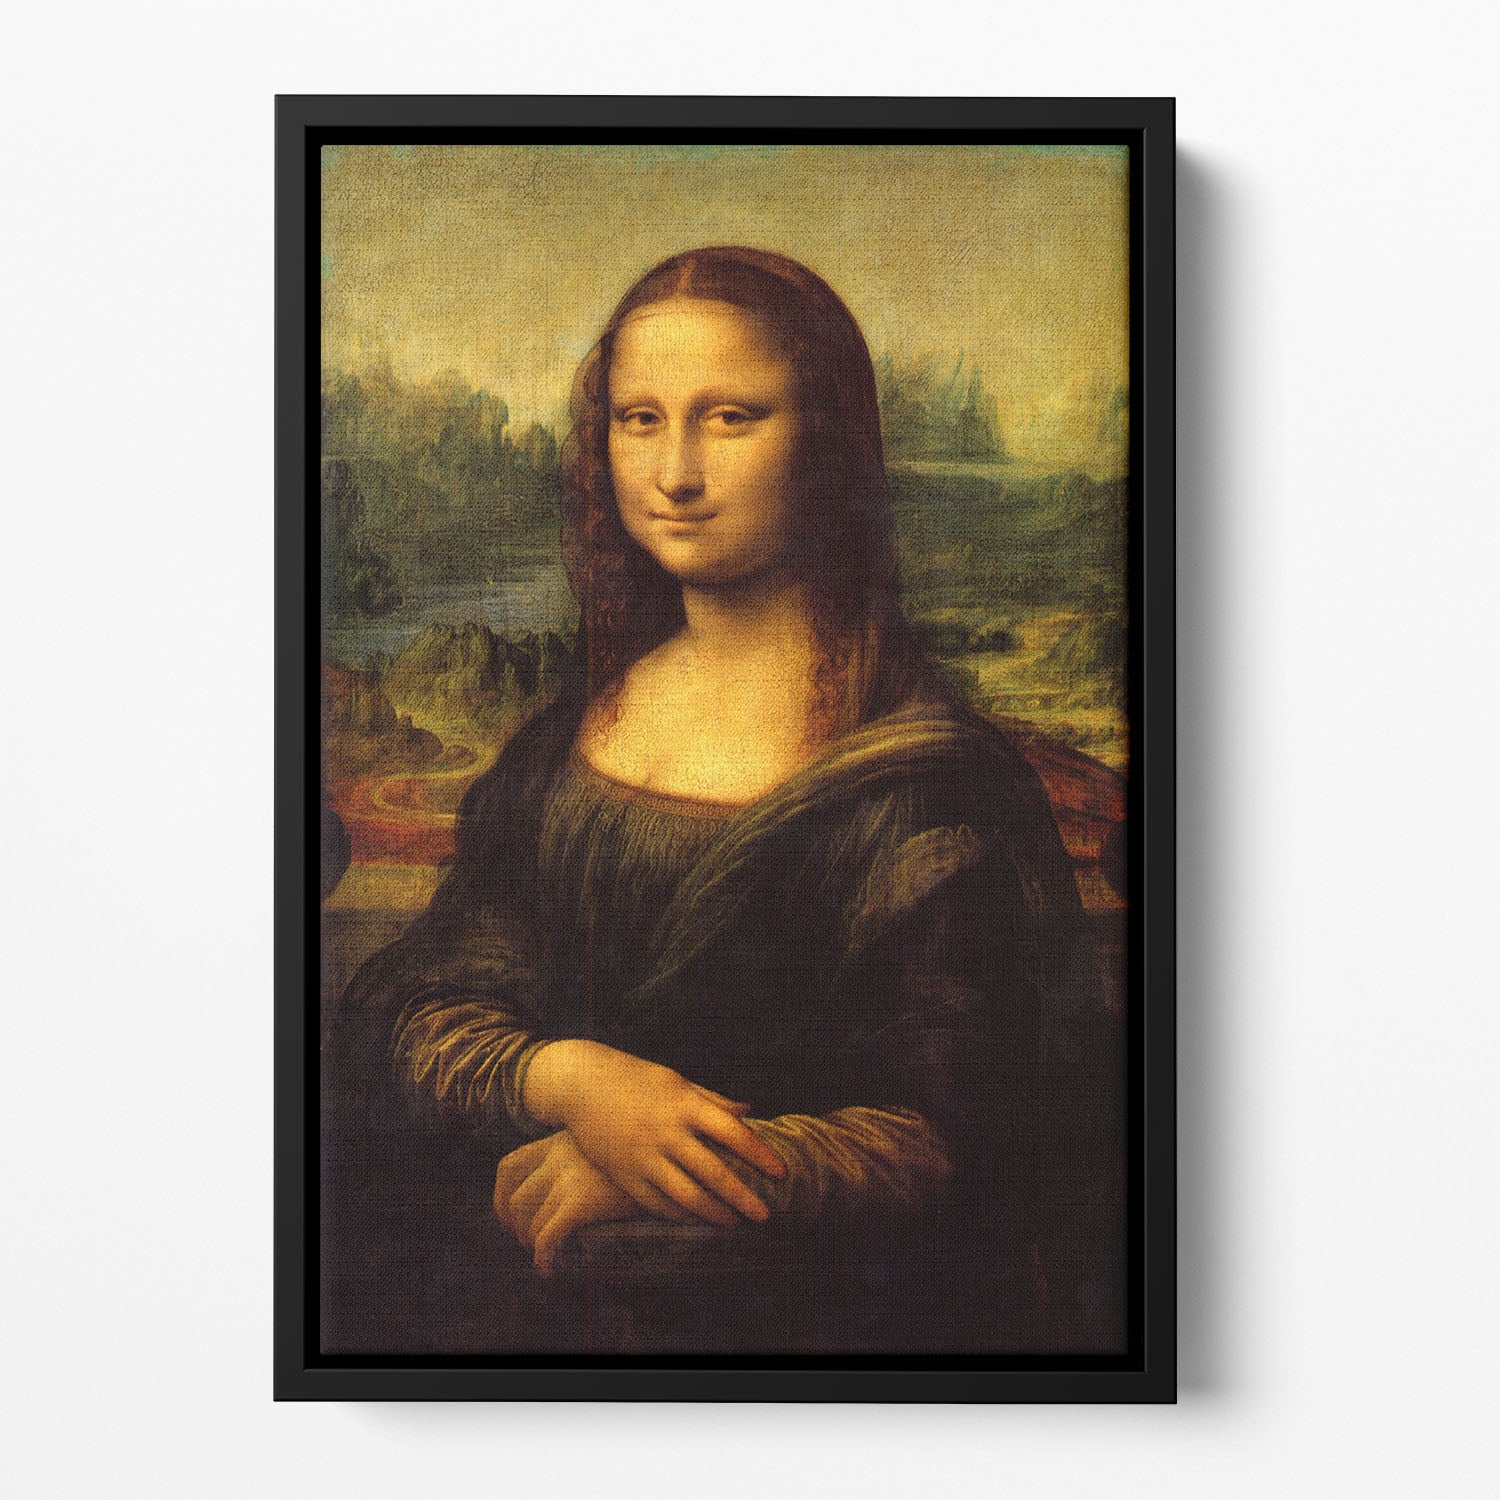 Mona Lisa by Da Vinci Floating Framed Canvas